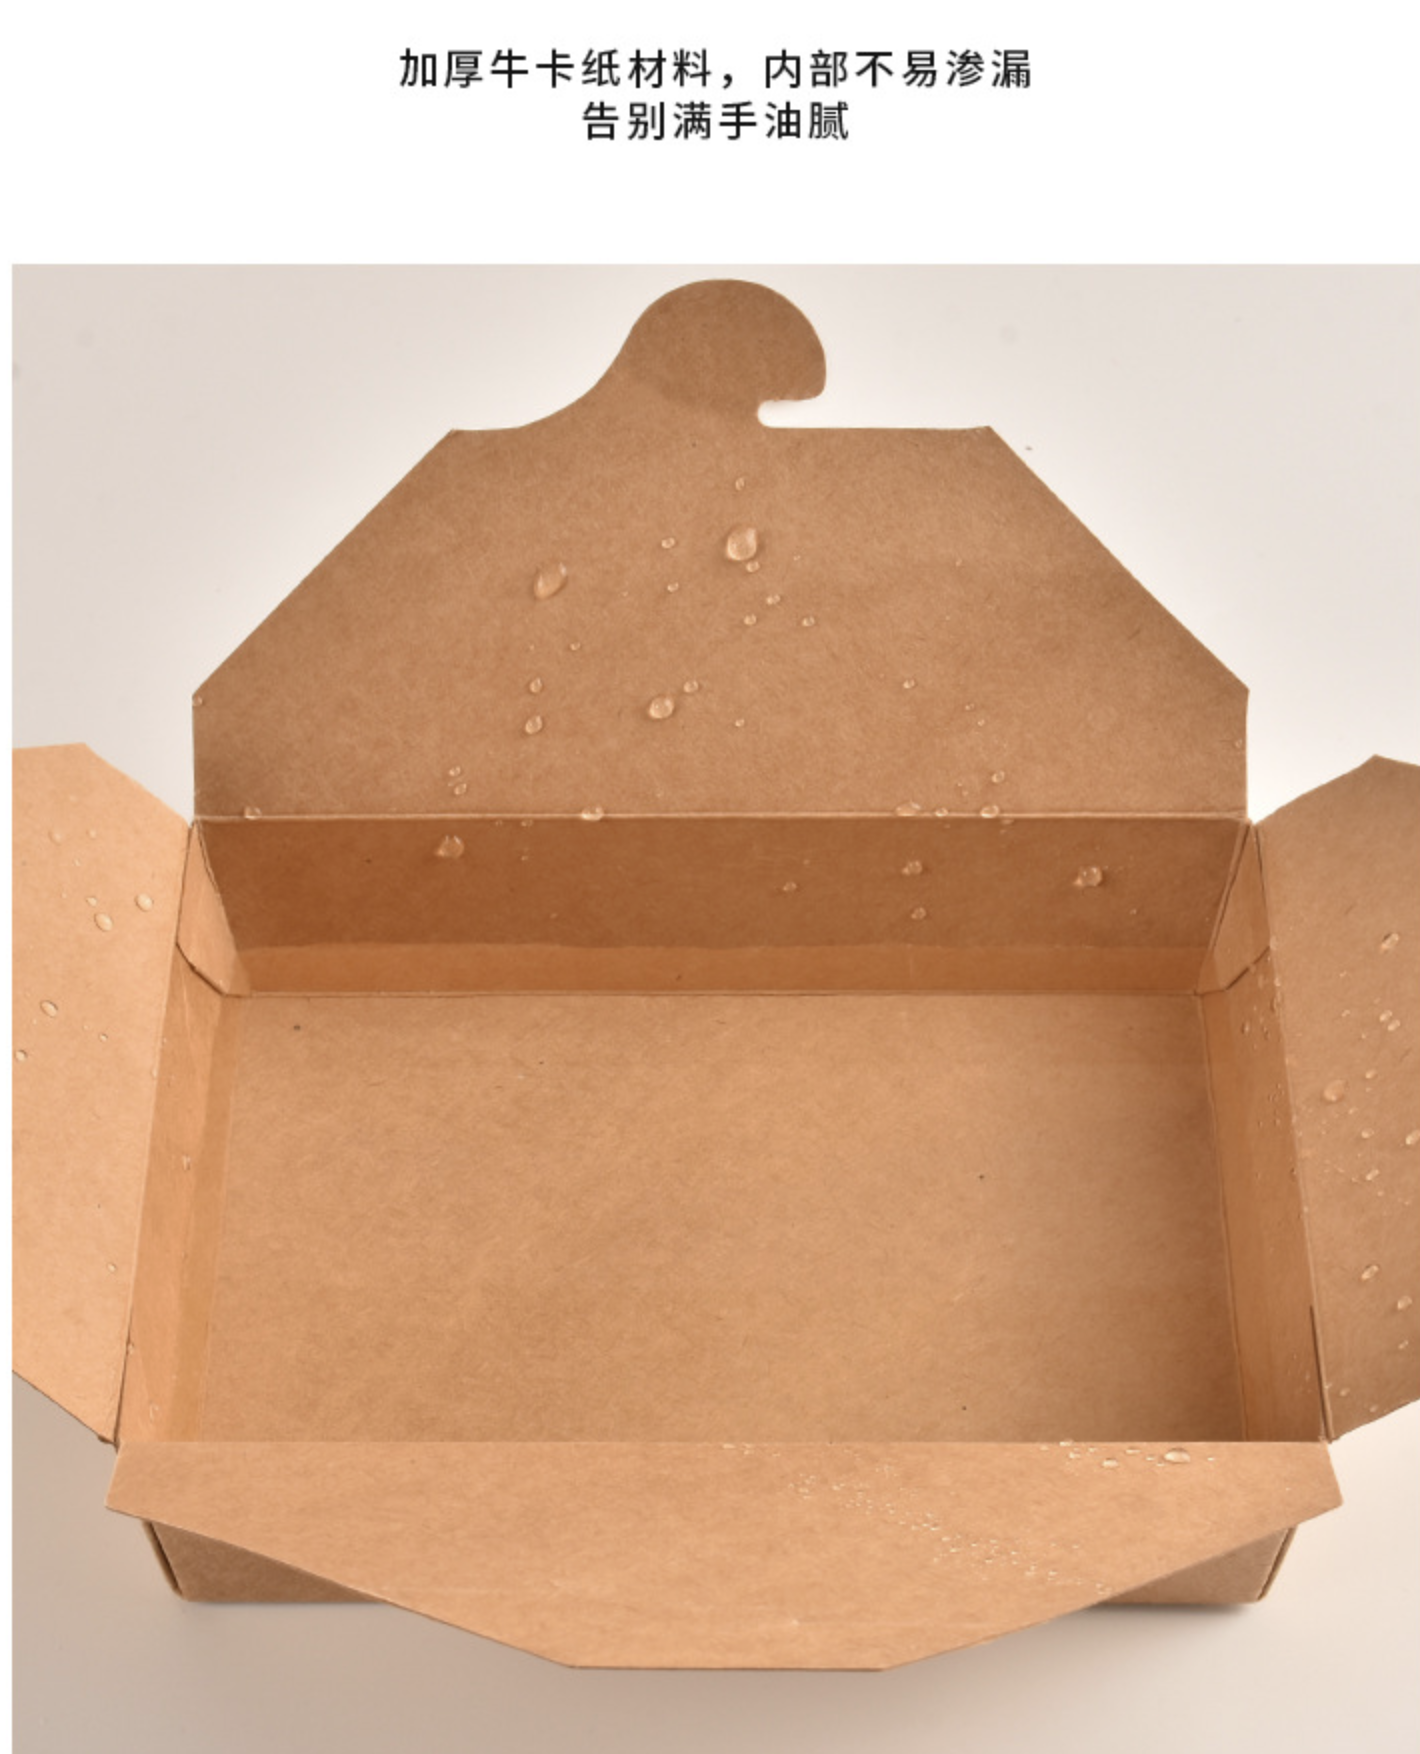 紙製餐盒(图3)